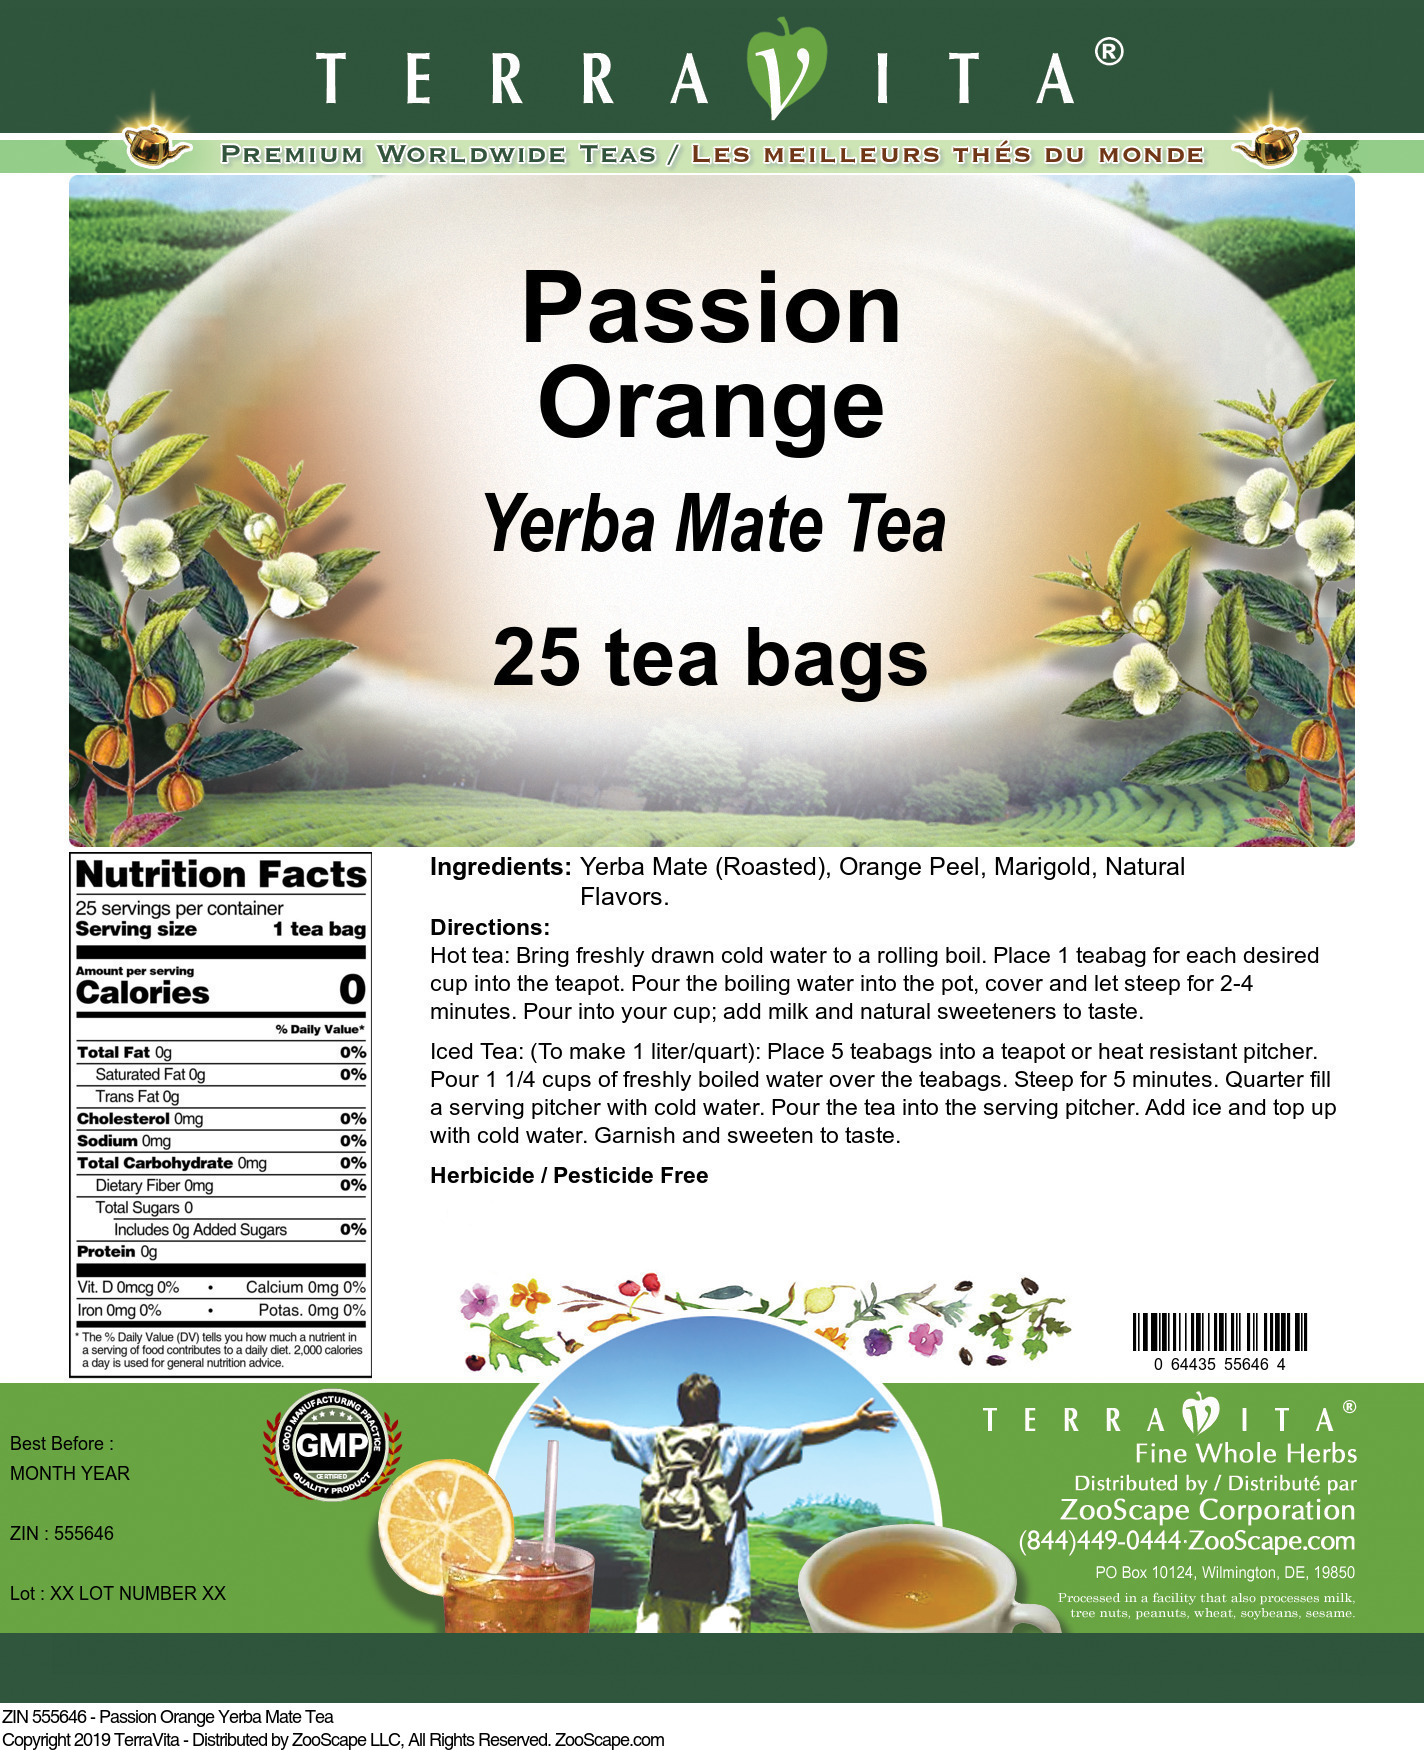 Passion Orange Yerba Mate Tea - Label